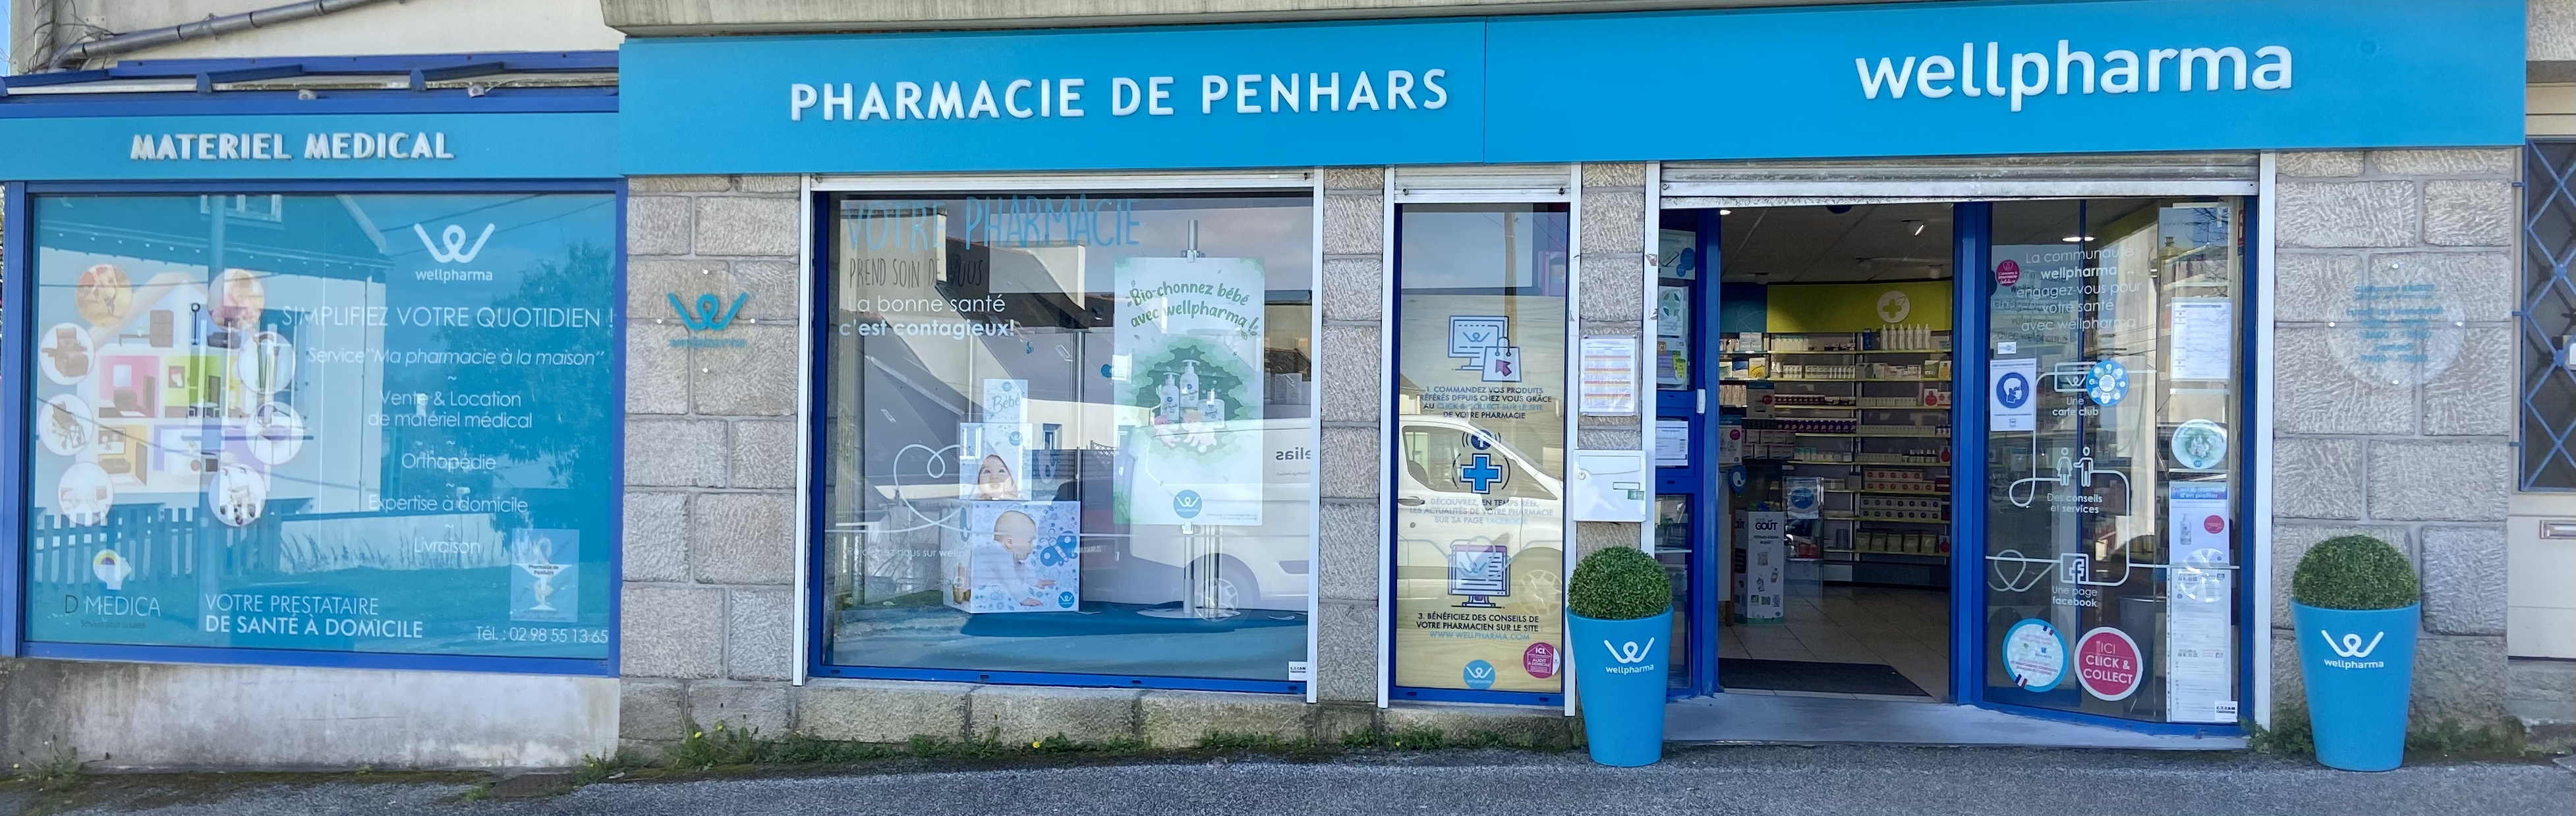 Photo de mise en avant de Pharmacie de Penhars